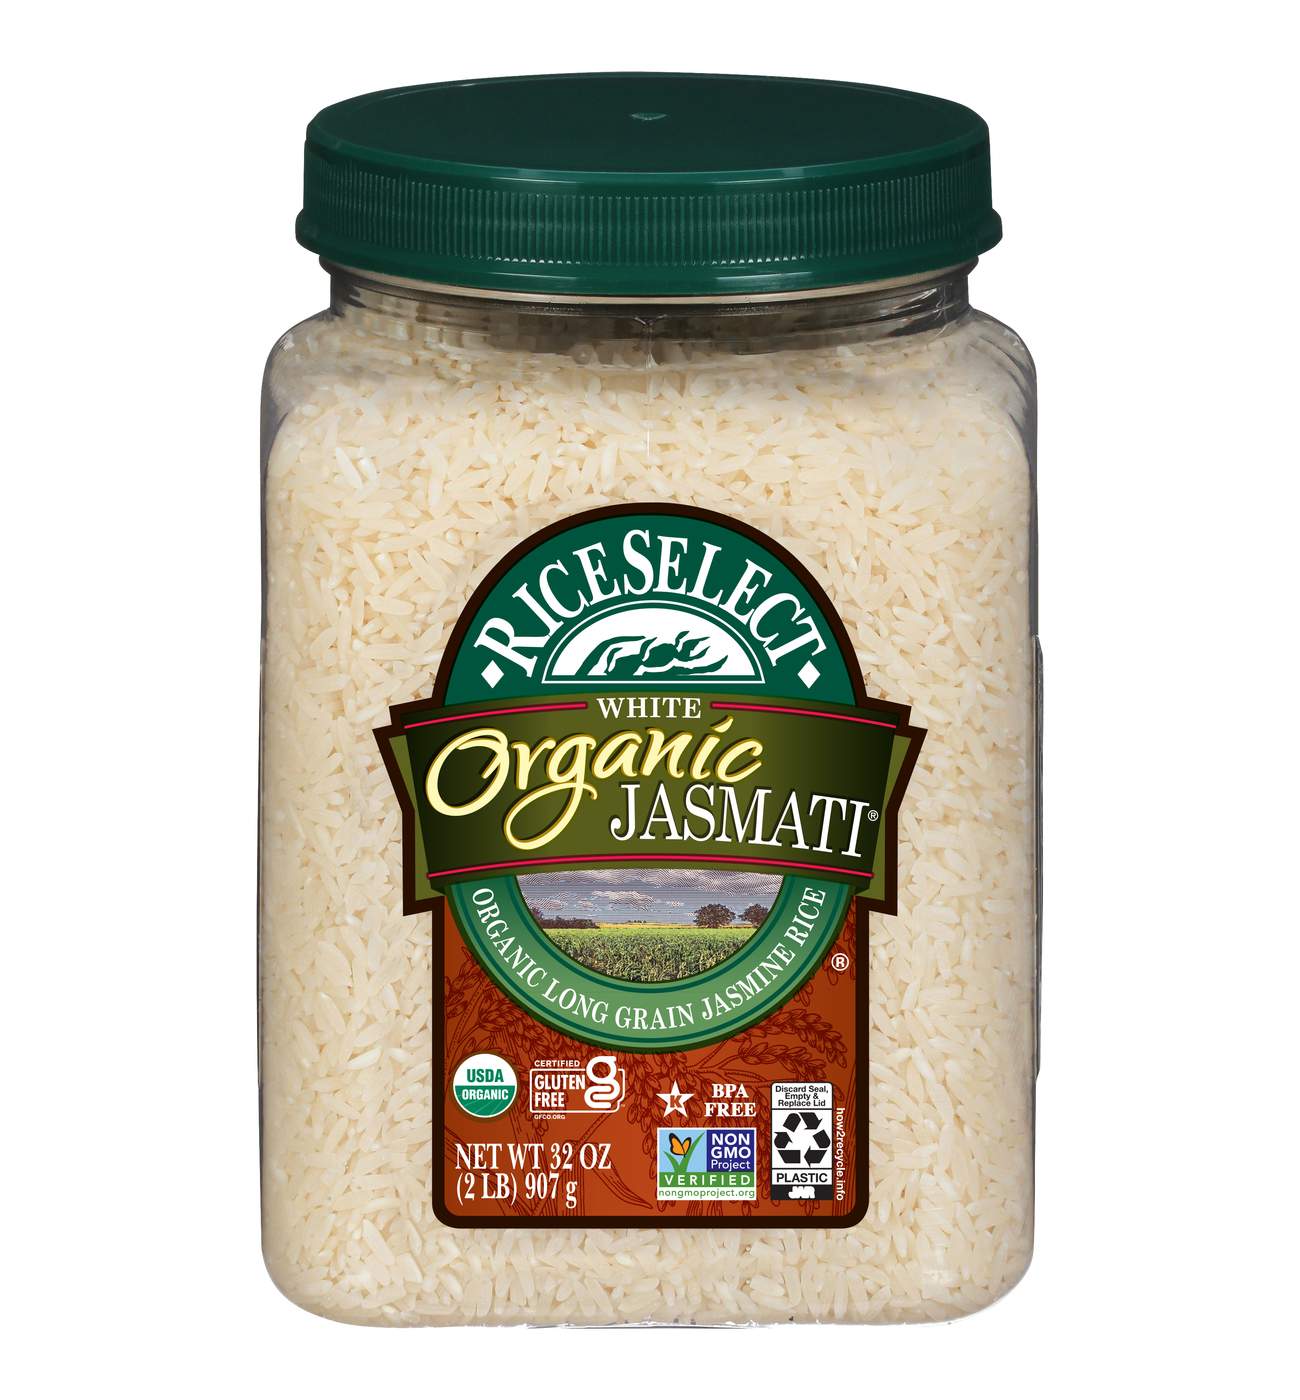 RiceSelect Organic Jasmati Rice; image 1 of 5